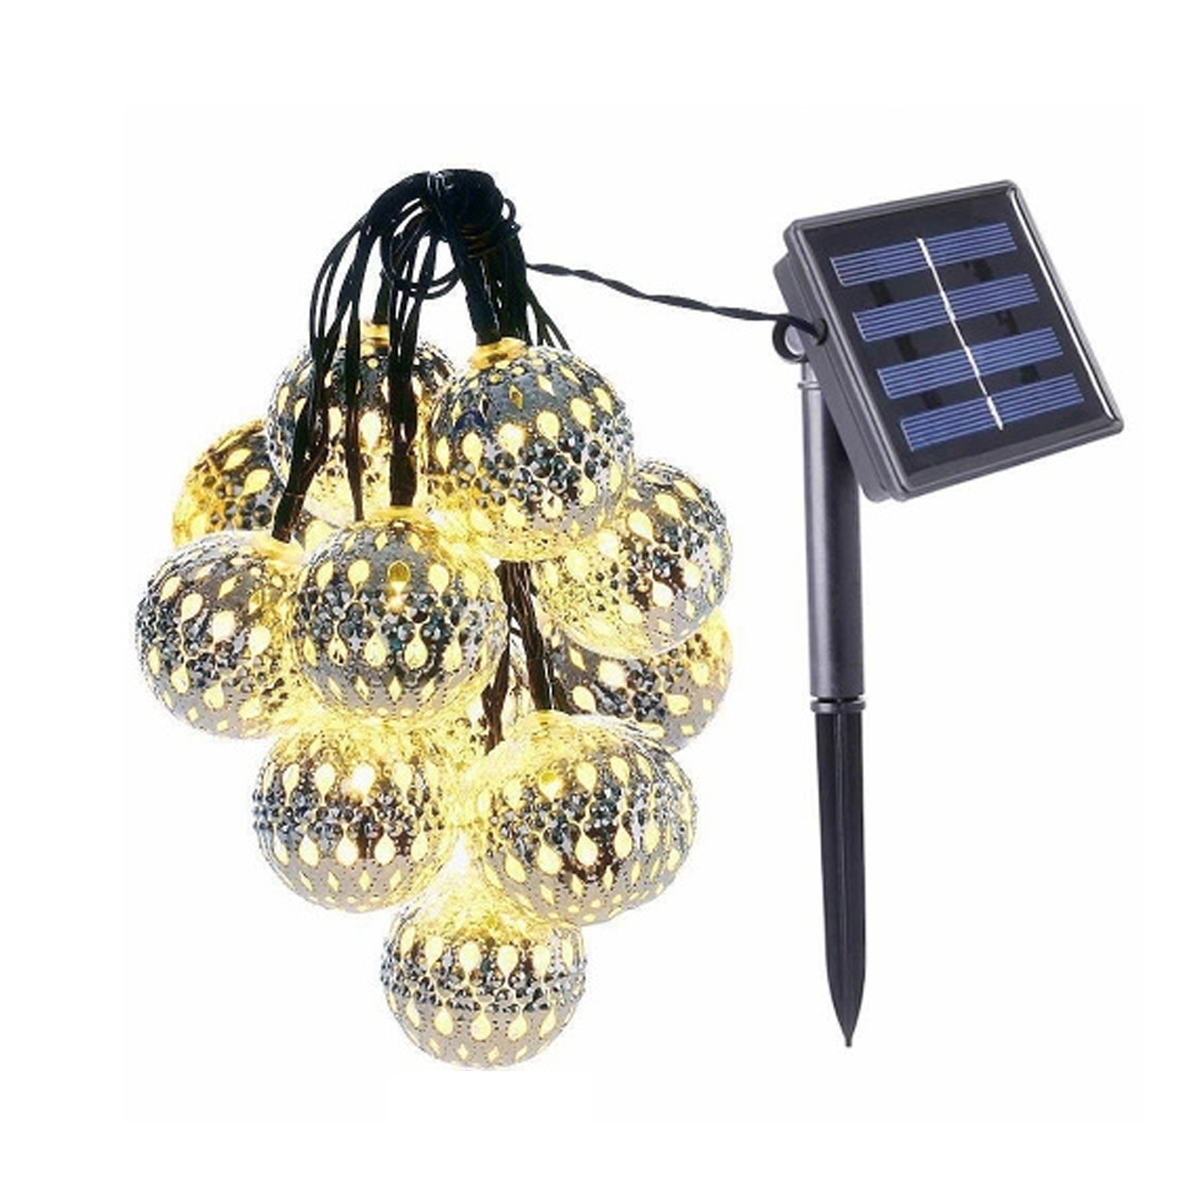 Lichterkette, Warmweiß Lichterketten Lichter solarbetriebene Solar-Lichterketten, 50 7m warmweiß LAMON Globe Kugellicht, Marokkanisches